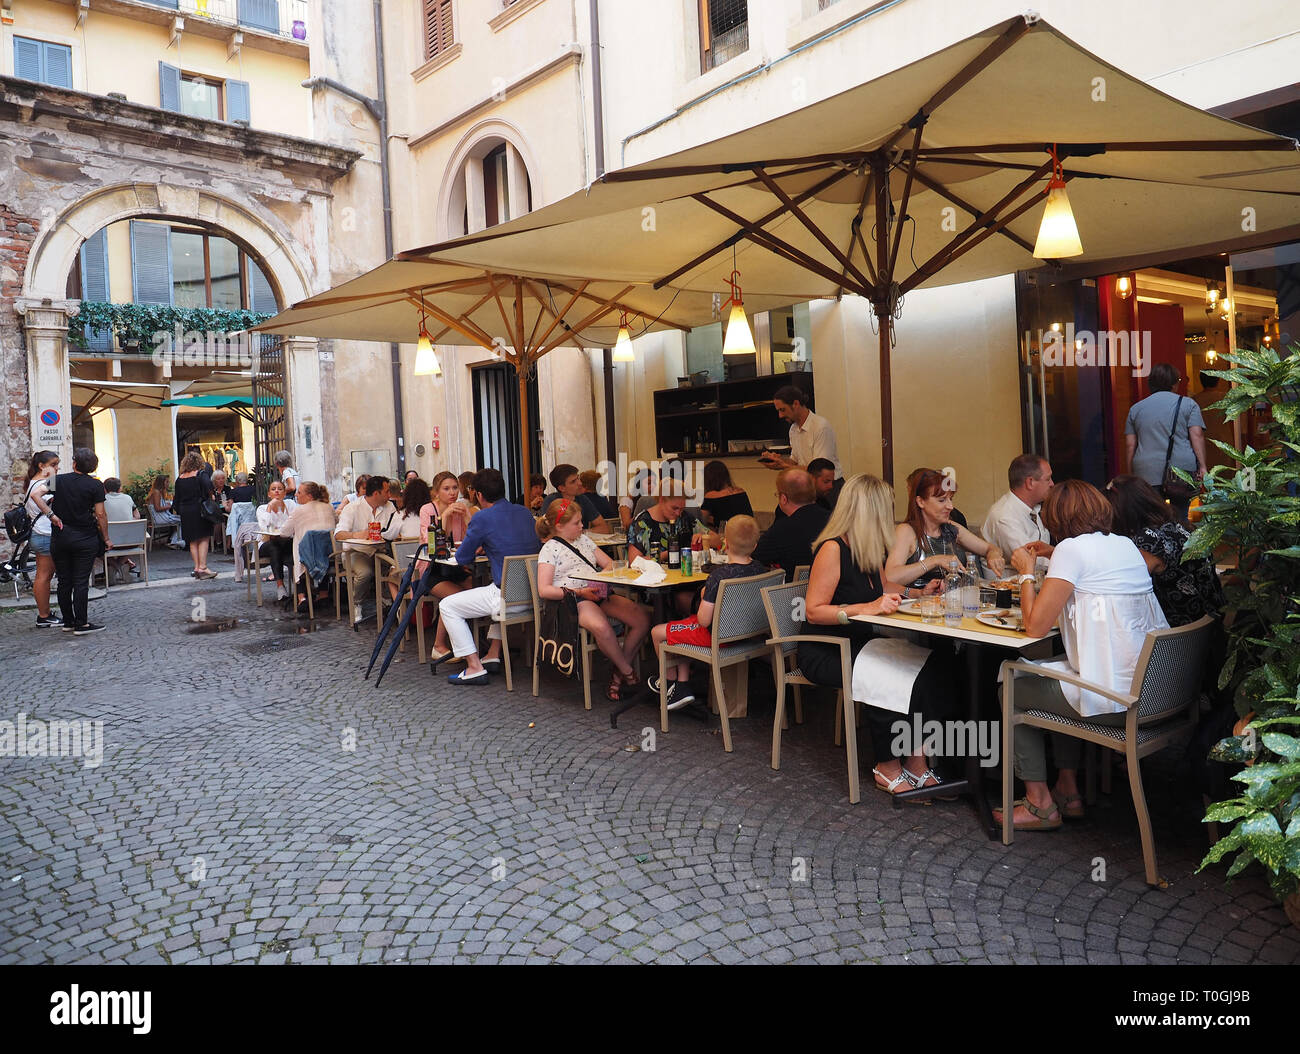 Europa, Italien, Veneto, Verona, typischen Restaurant im historischen Zentrum Stockfoto